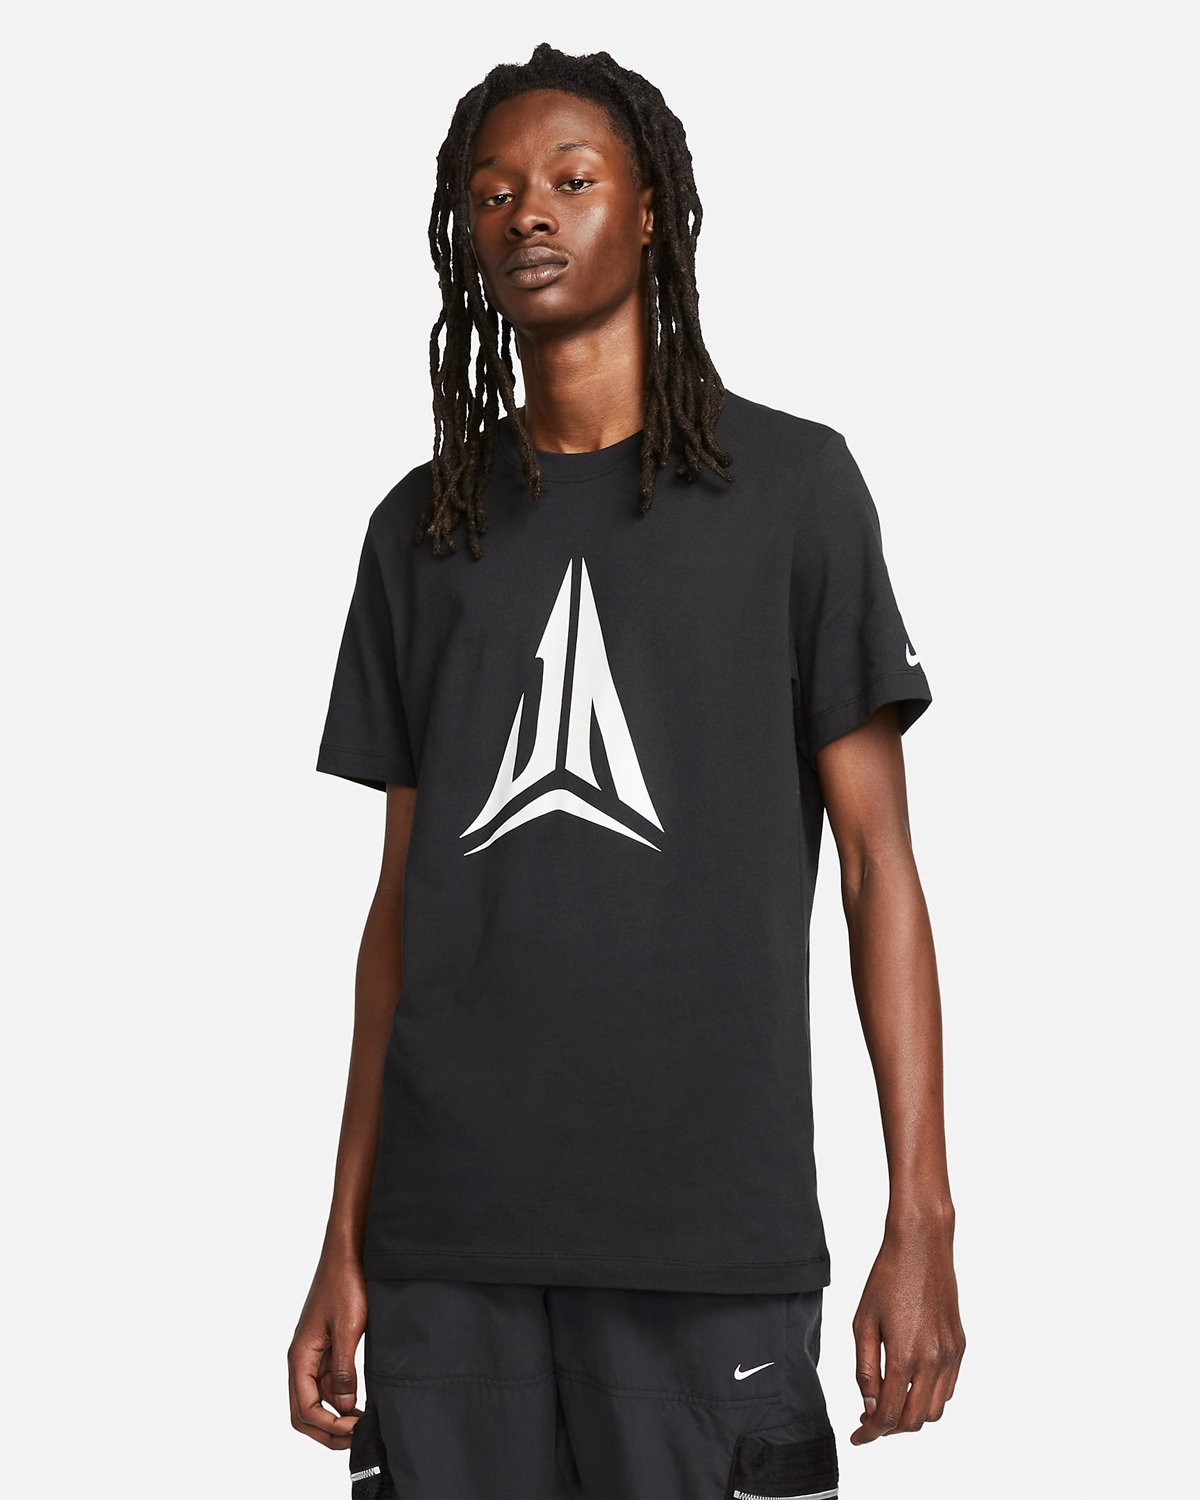 Nike-Ja-1-T-Shirt-Black-White